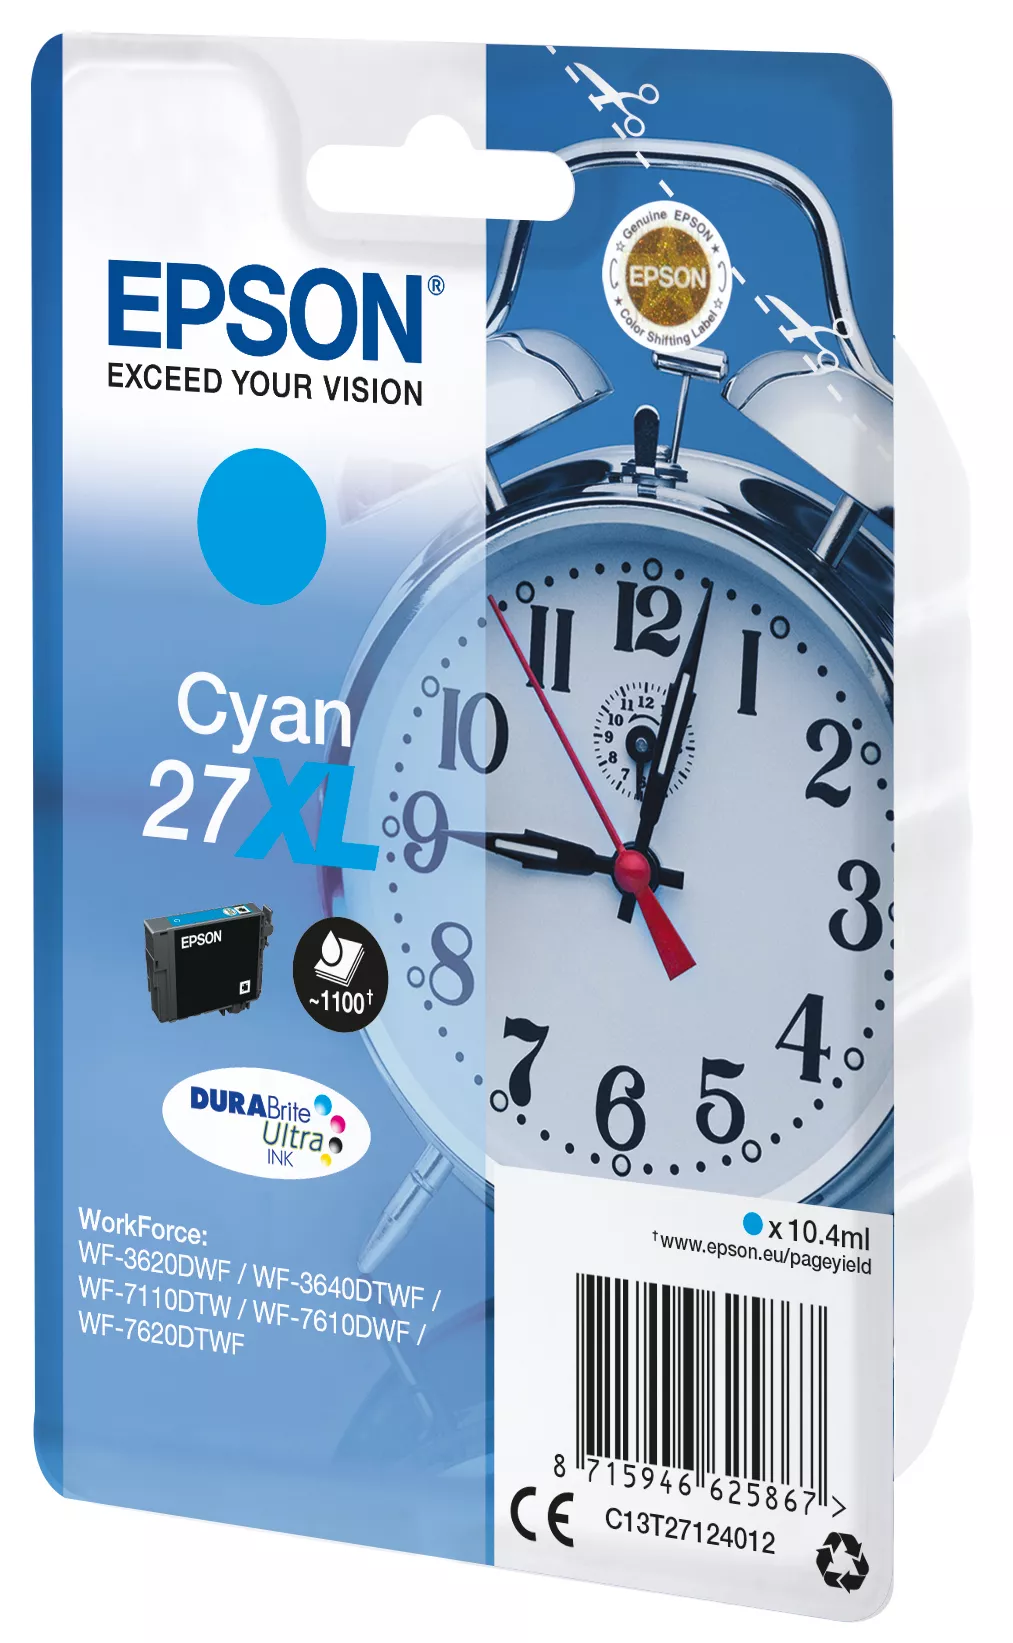 Vente EPSON 27XL cartouche d encre cyan haute capacité Epson au meilleur prix - visuel 2